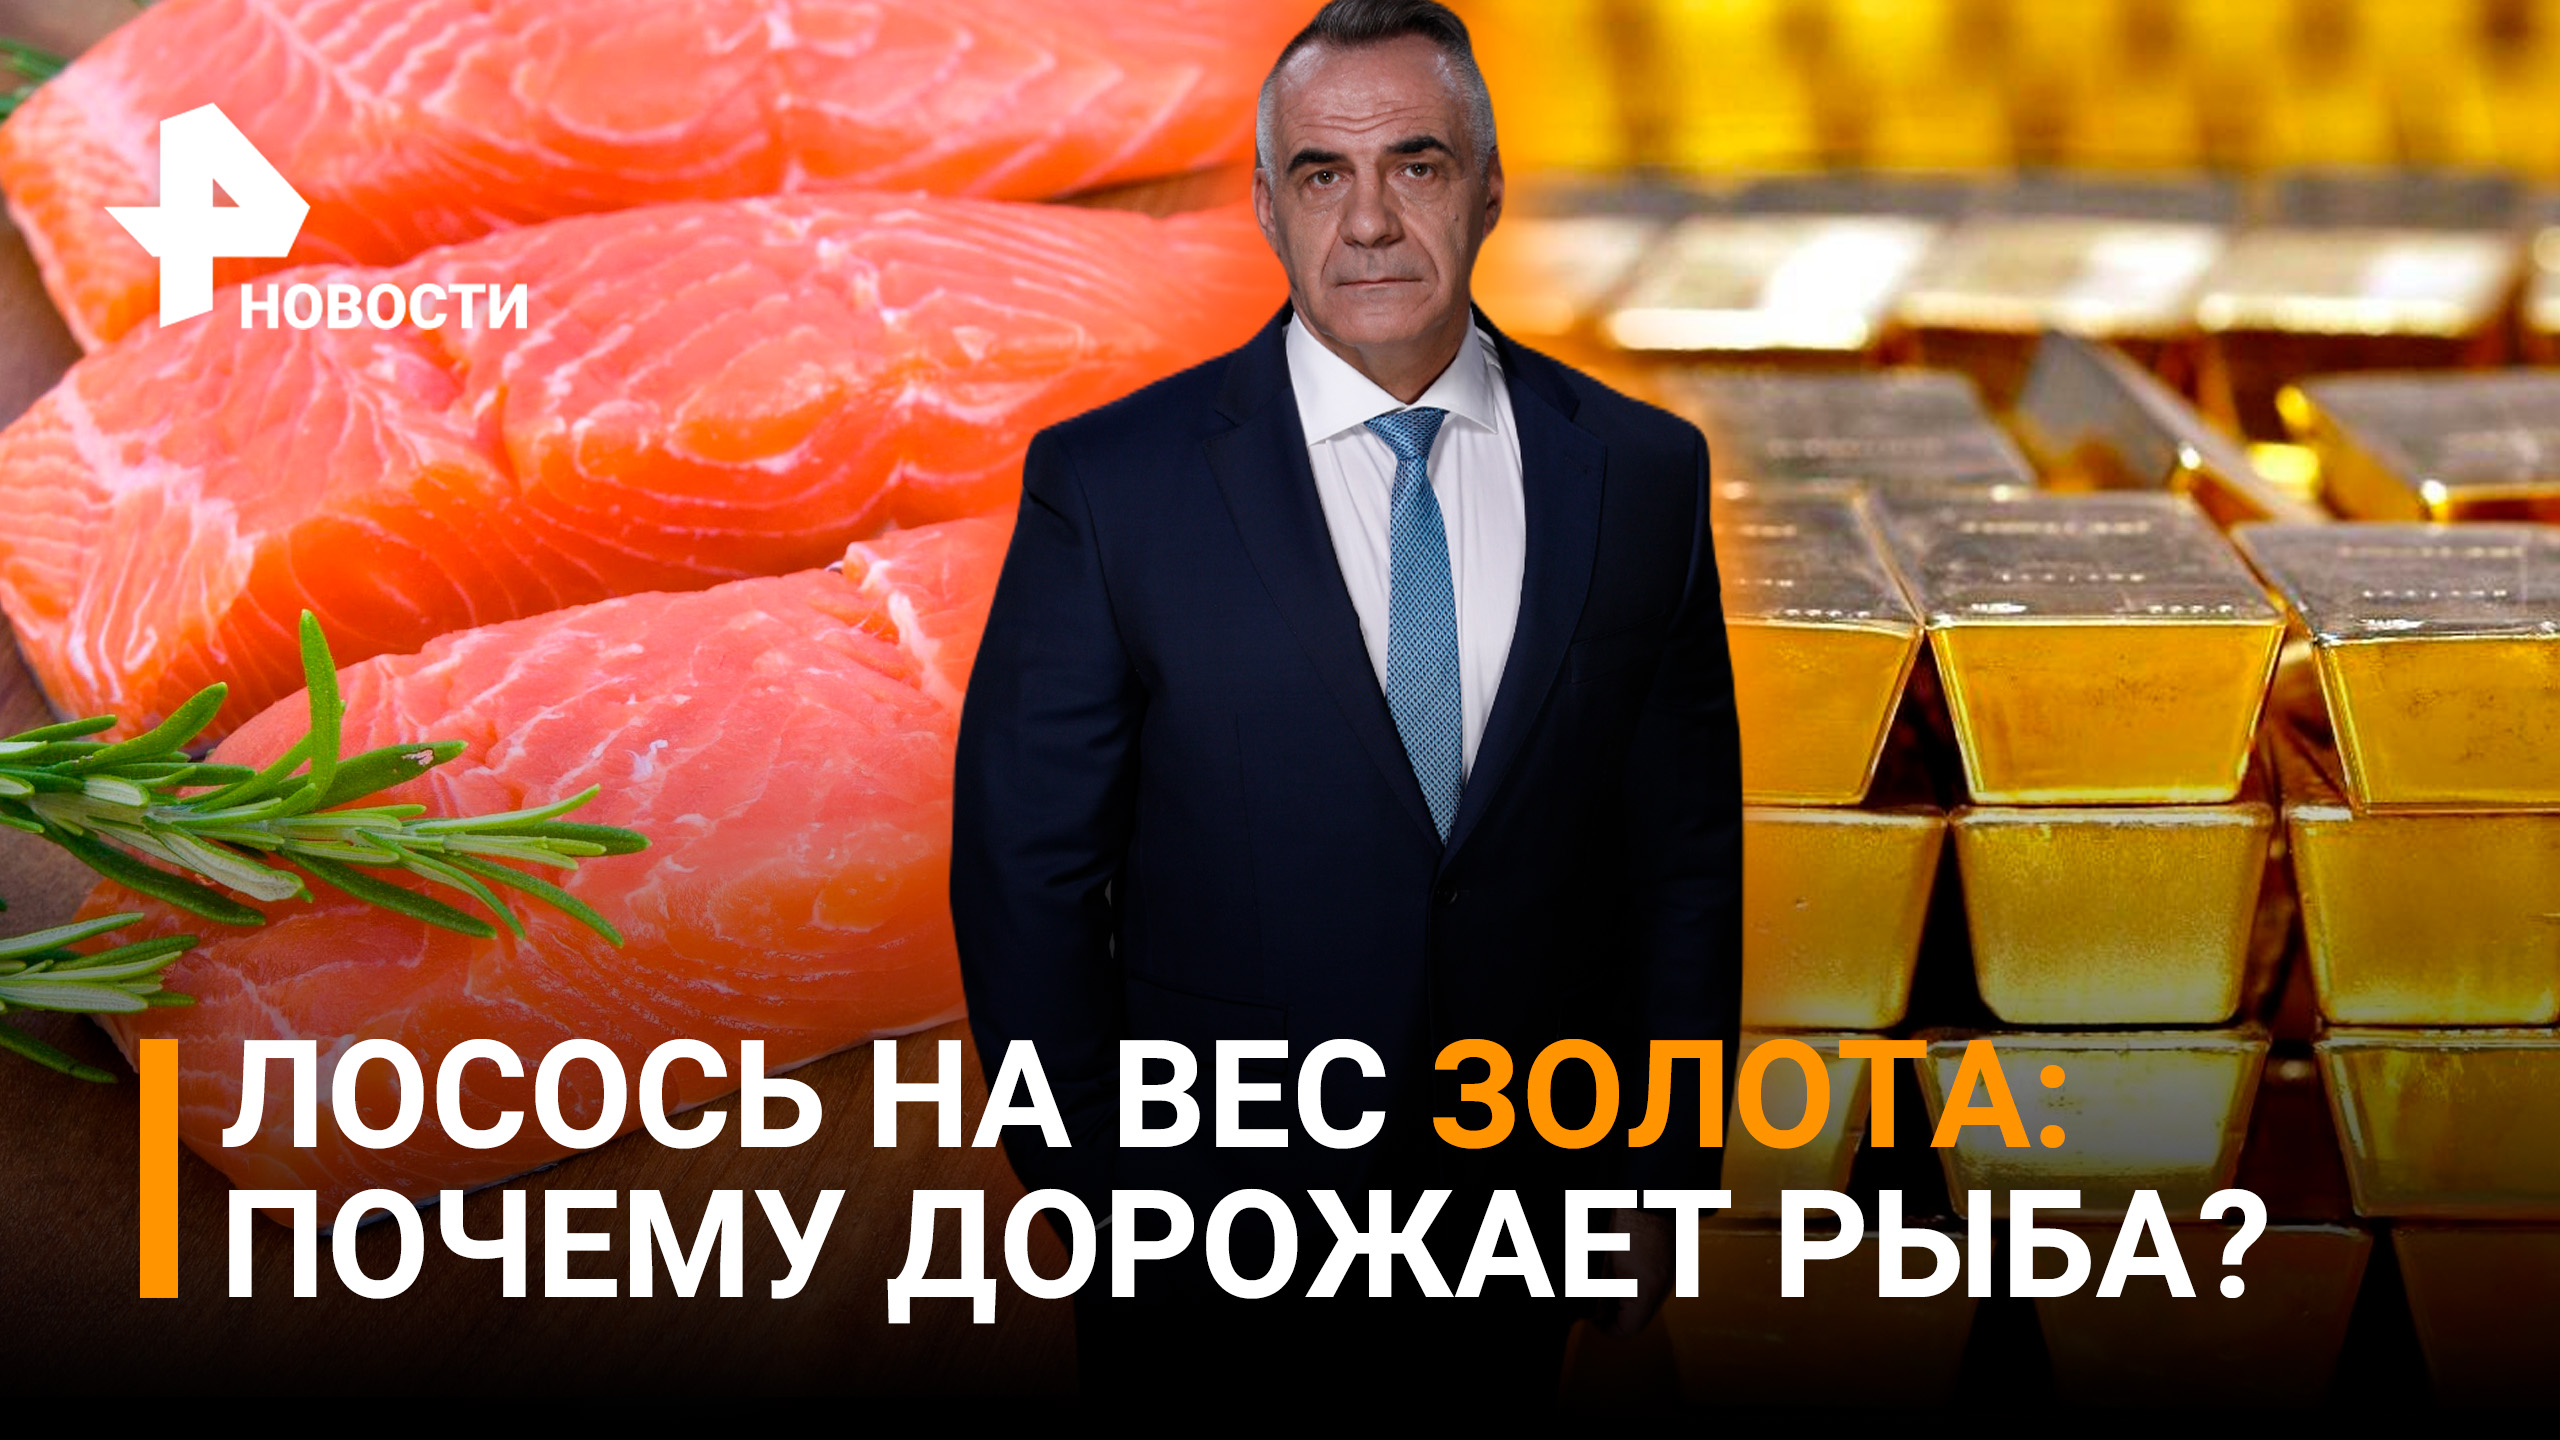 Красная рыба стала "золотой": почему растут цены и как их снизить / Итоги с Петром Марченко